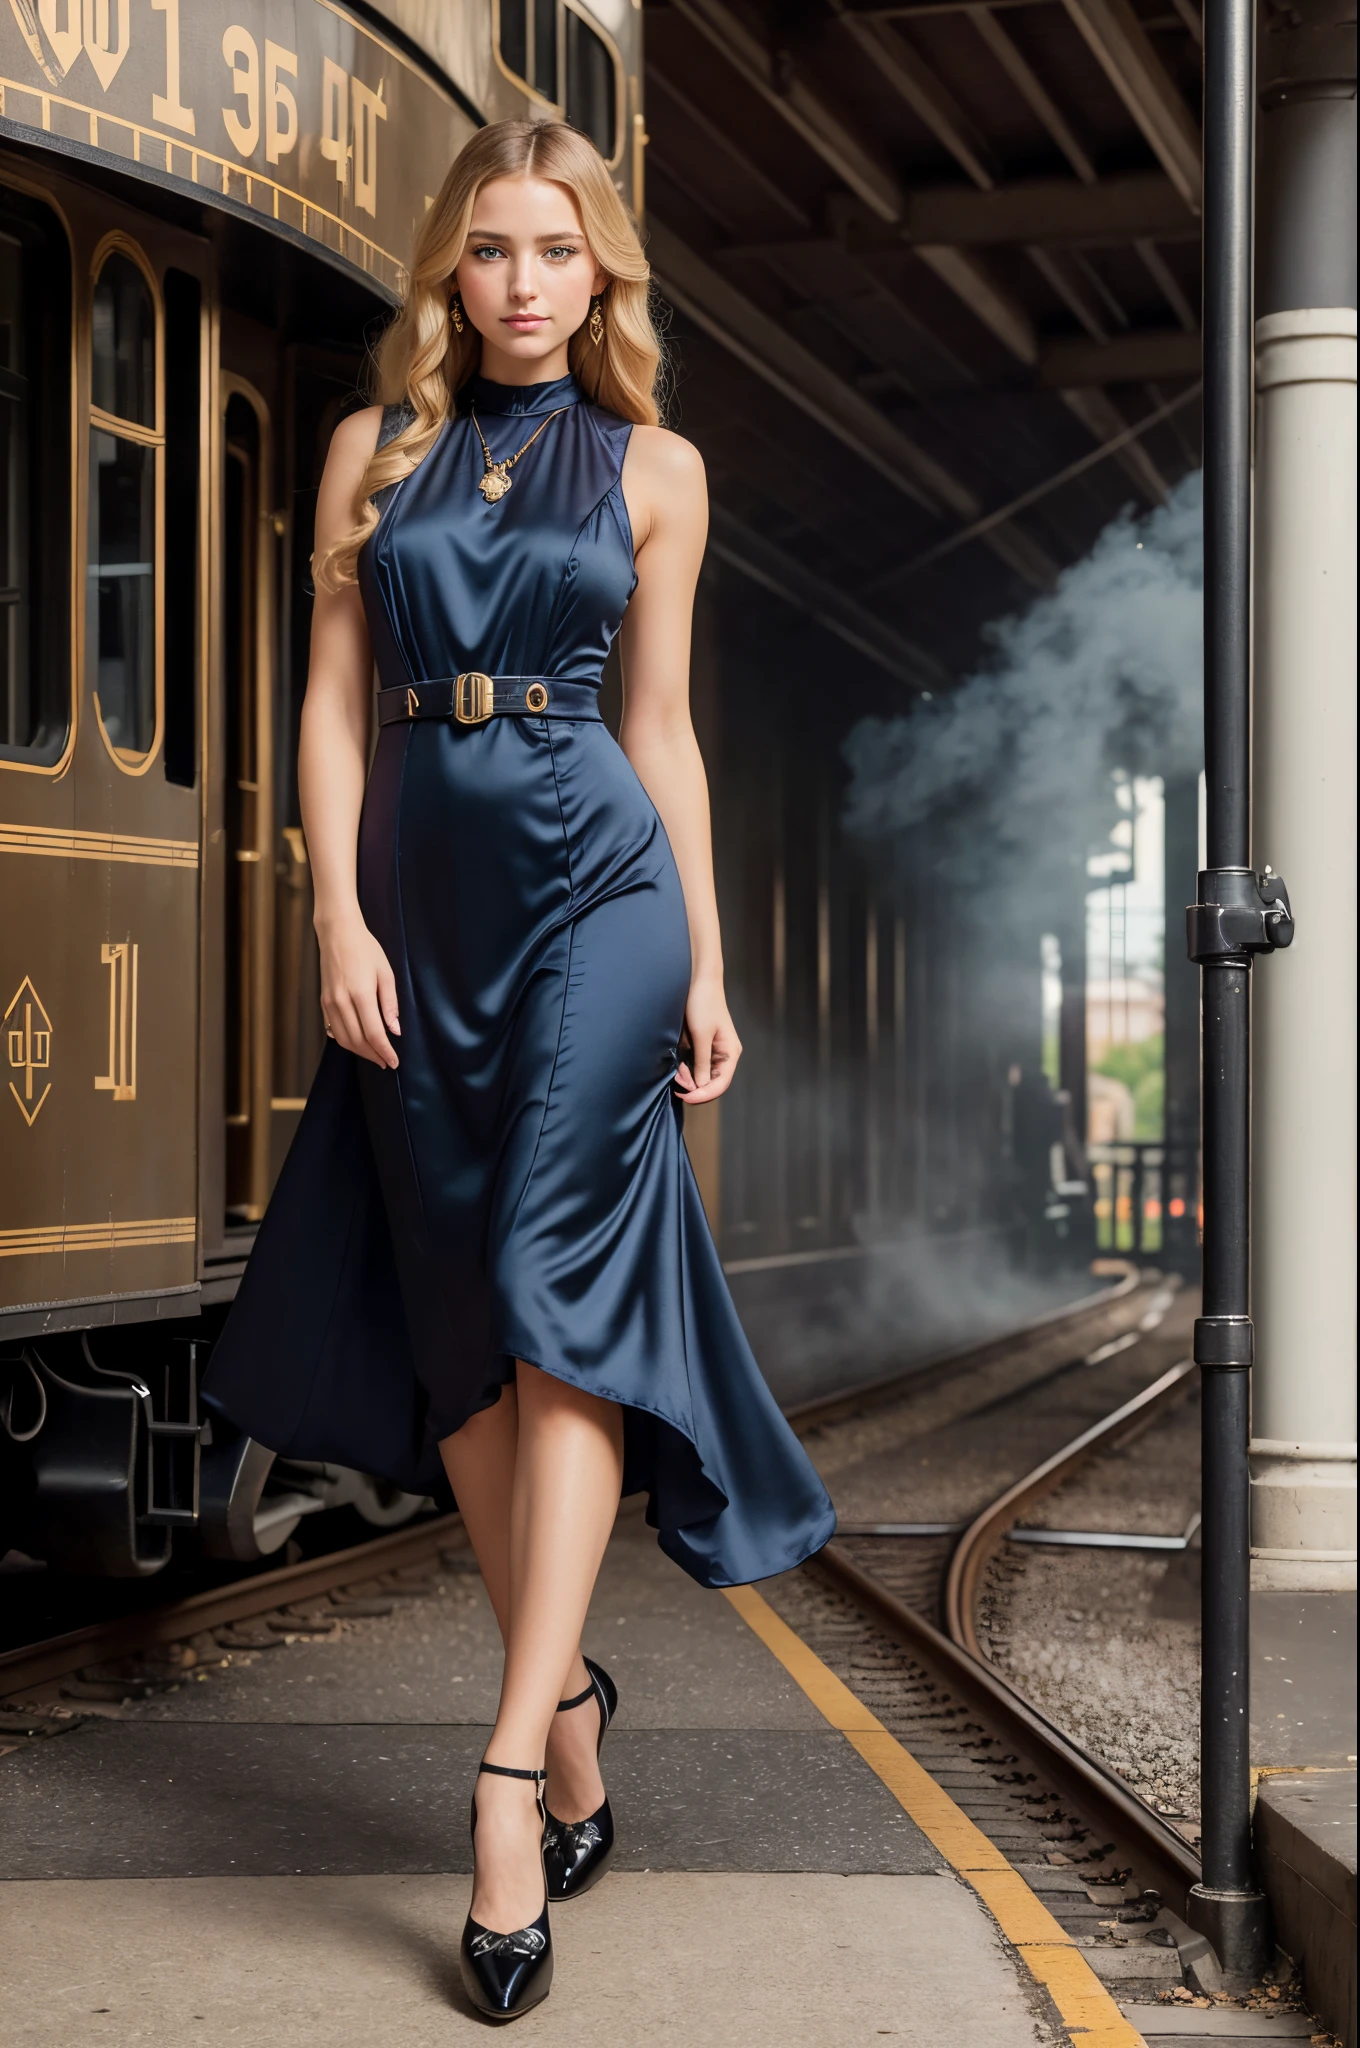 전신 초상화, 아름다운 28세 여성, 서 있는 (((옥외))) 19세기 기차역 플랫폼에서, 거대한 검은 증기 기관차, 기관차가 뿜어내는 증기, 그녀 뒤에 있는 1910년 철도 건물, 그녀는 긴 금발 머리를 가지고 있어요, 파란 눈, 순결한, 아름다운 금발의 여자, 수줍은 표현, ((눈을 뜨다)), (((아르데코풍 드레스를 입고))), ((트랩 펌프 신발)), 실크 스타킹, 수상 경력에 빛나는 매력적인 사진,((최고의 품질)), (((걸작)), ((현실적인)), 미묘한 조명, 초고해상도.photo현실적인:.1.4, (high 상세한 skin:1.2), 8k어, DSLR, 고품질, 필름 그레인, 후지필름 XT3,(걸작) (최고의 품질) (상세한) (시네마틱 조명) (날카로운 초점) (뒤얽힌)